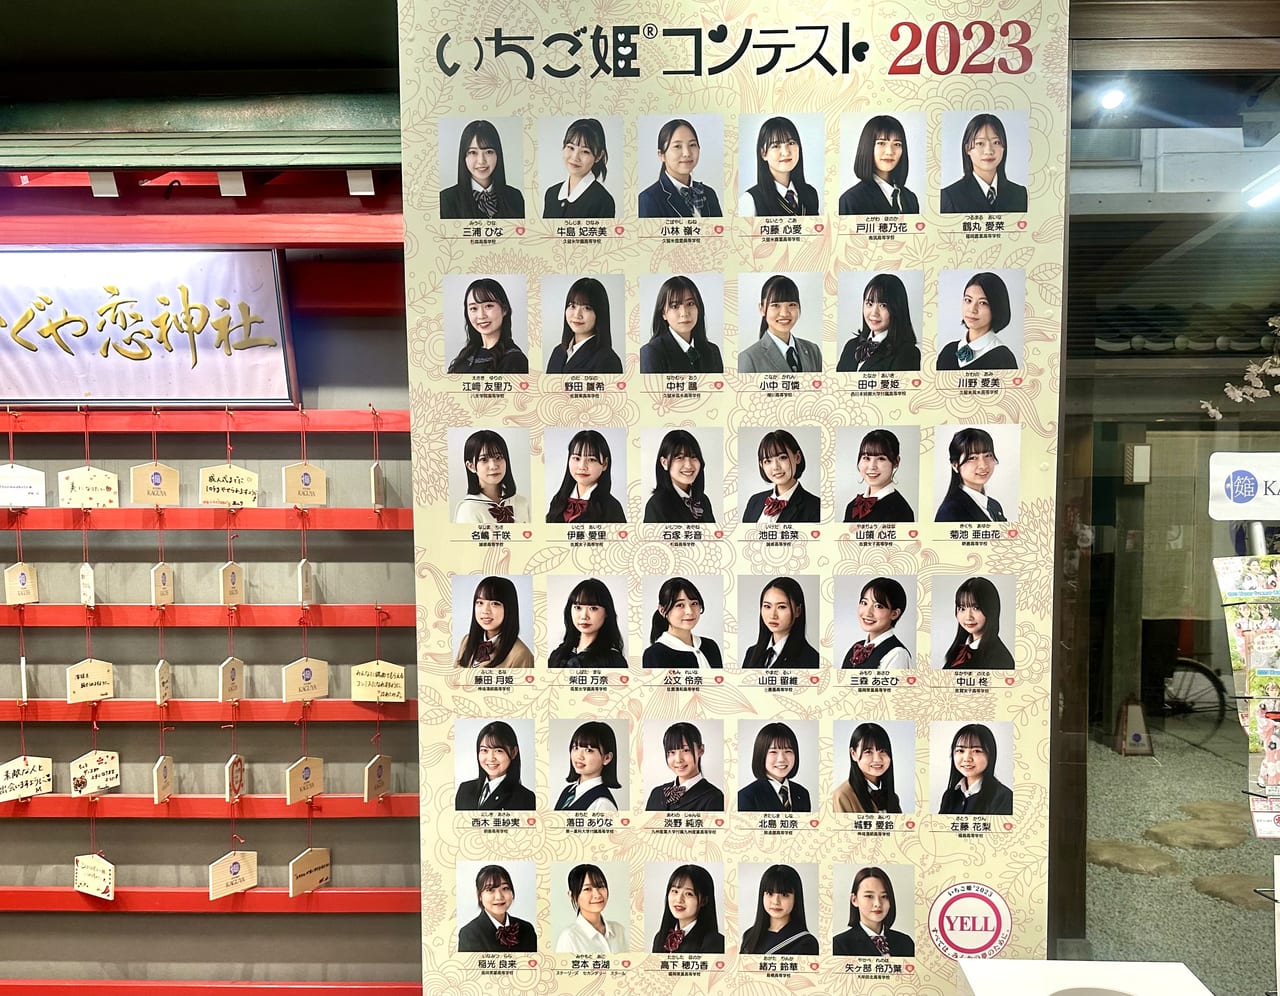 2023年「いちご姫コンテスト2023」